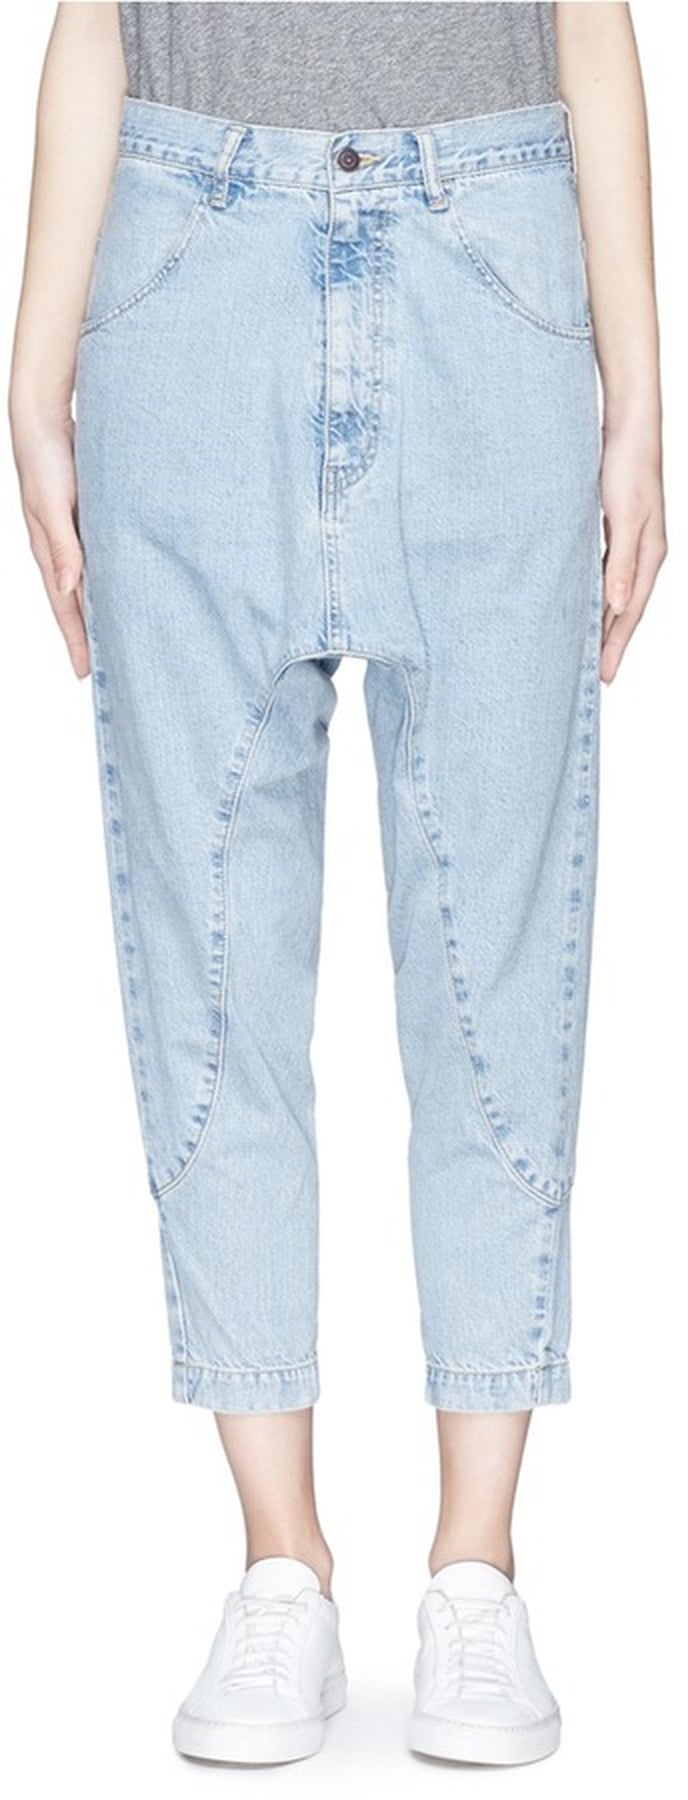 Beyonce Wearing Baggy Jeans | POPSUGAR Fashion